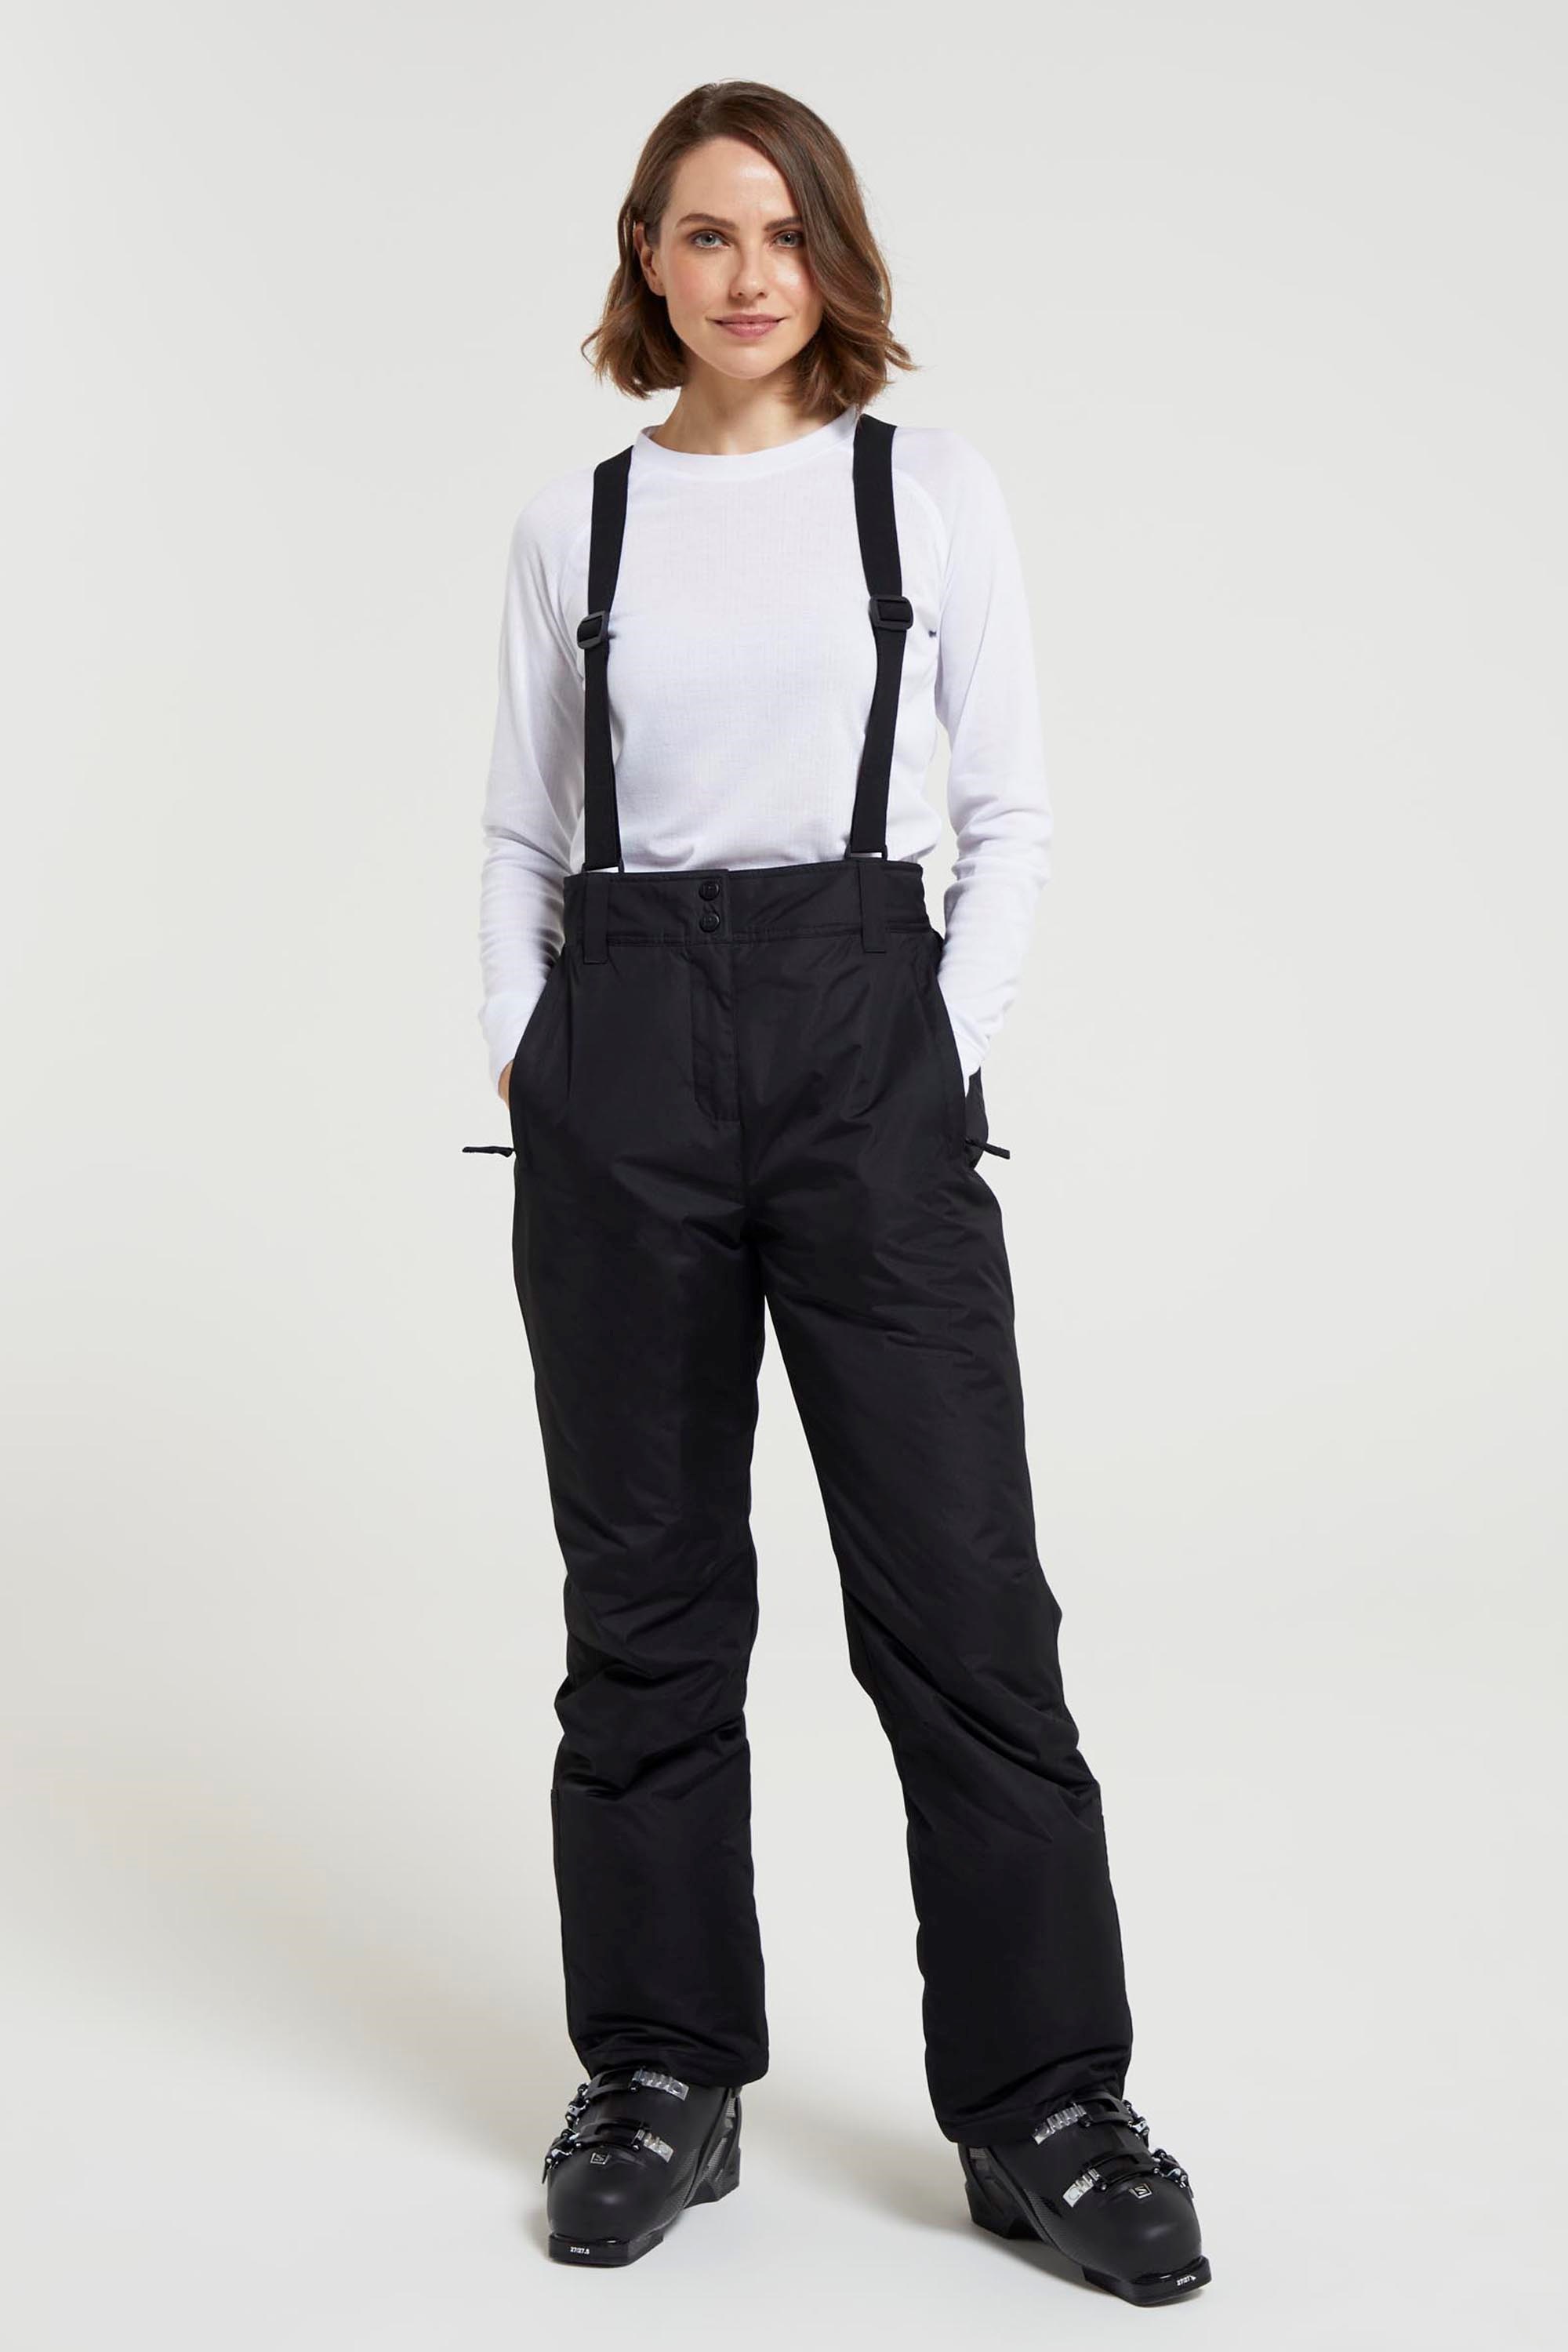 1920s Style Women's Pants, Trousers, Knickers, Tuxedo